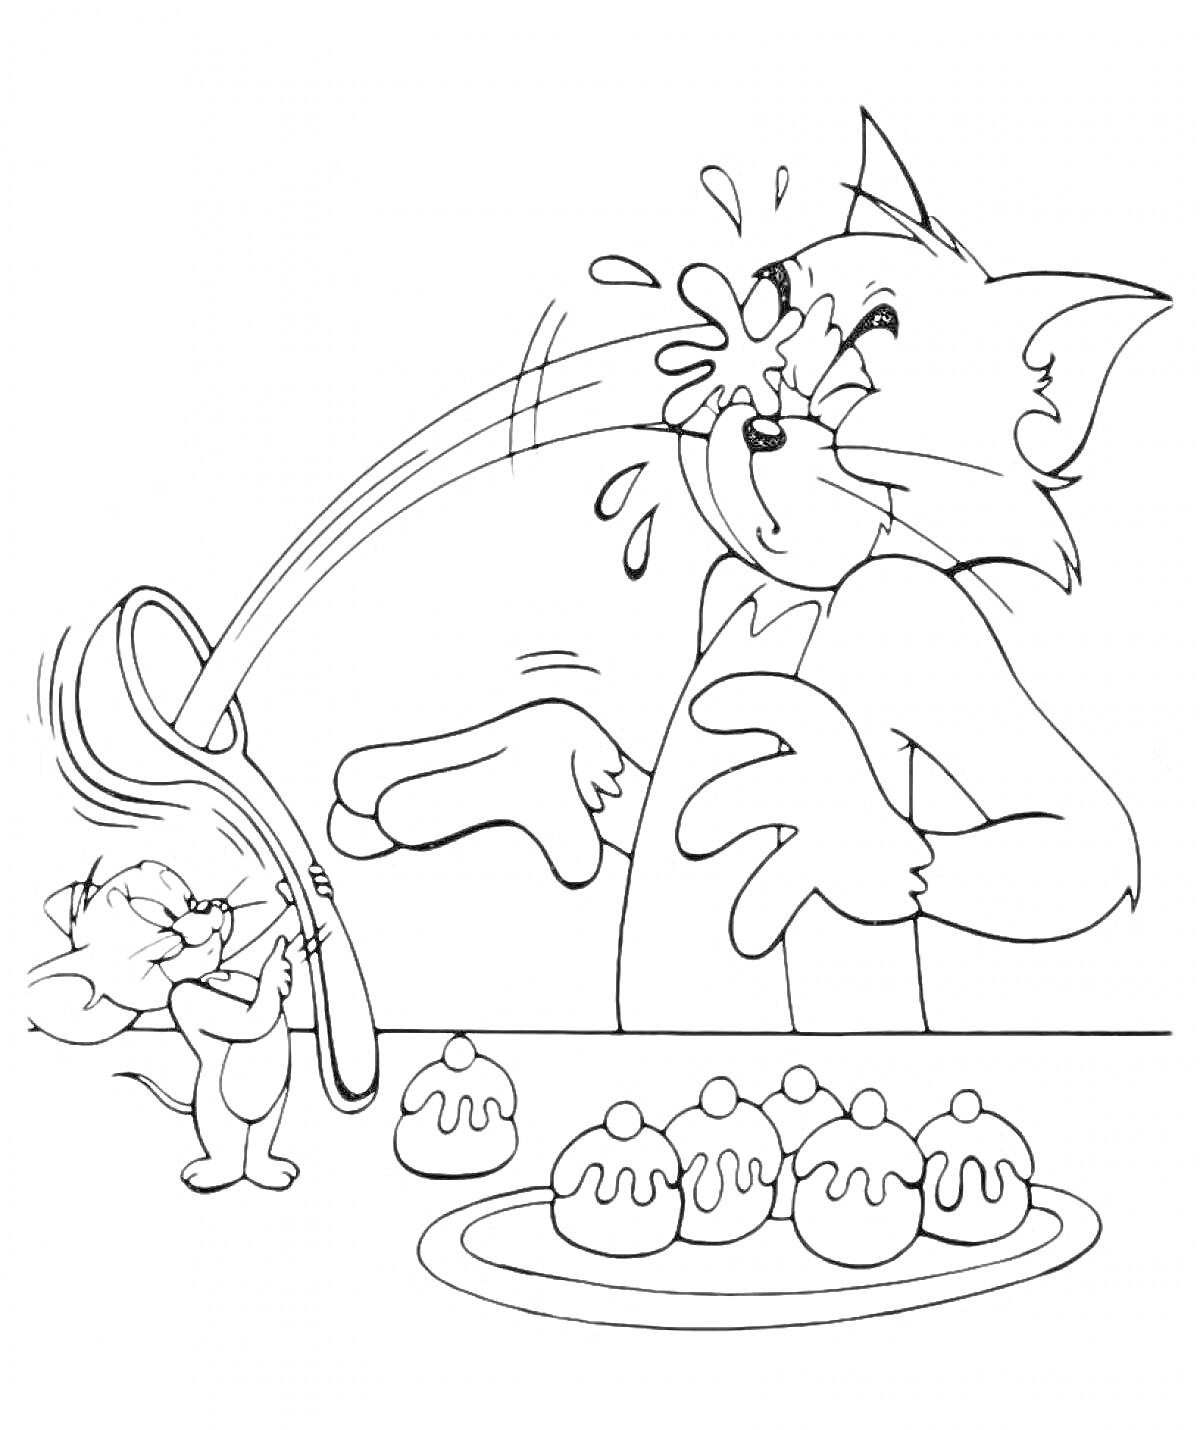 Раскраска Кот обливается лицом от шланга, мышь направляет шланг, пять пирожных на тарелке